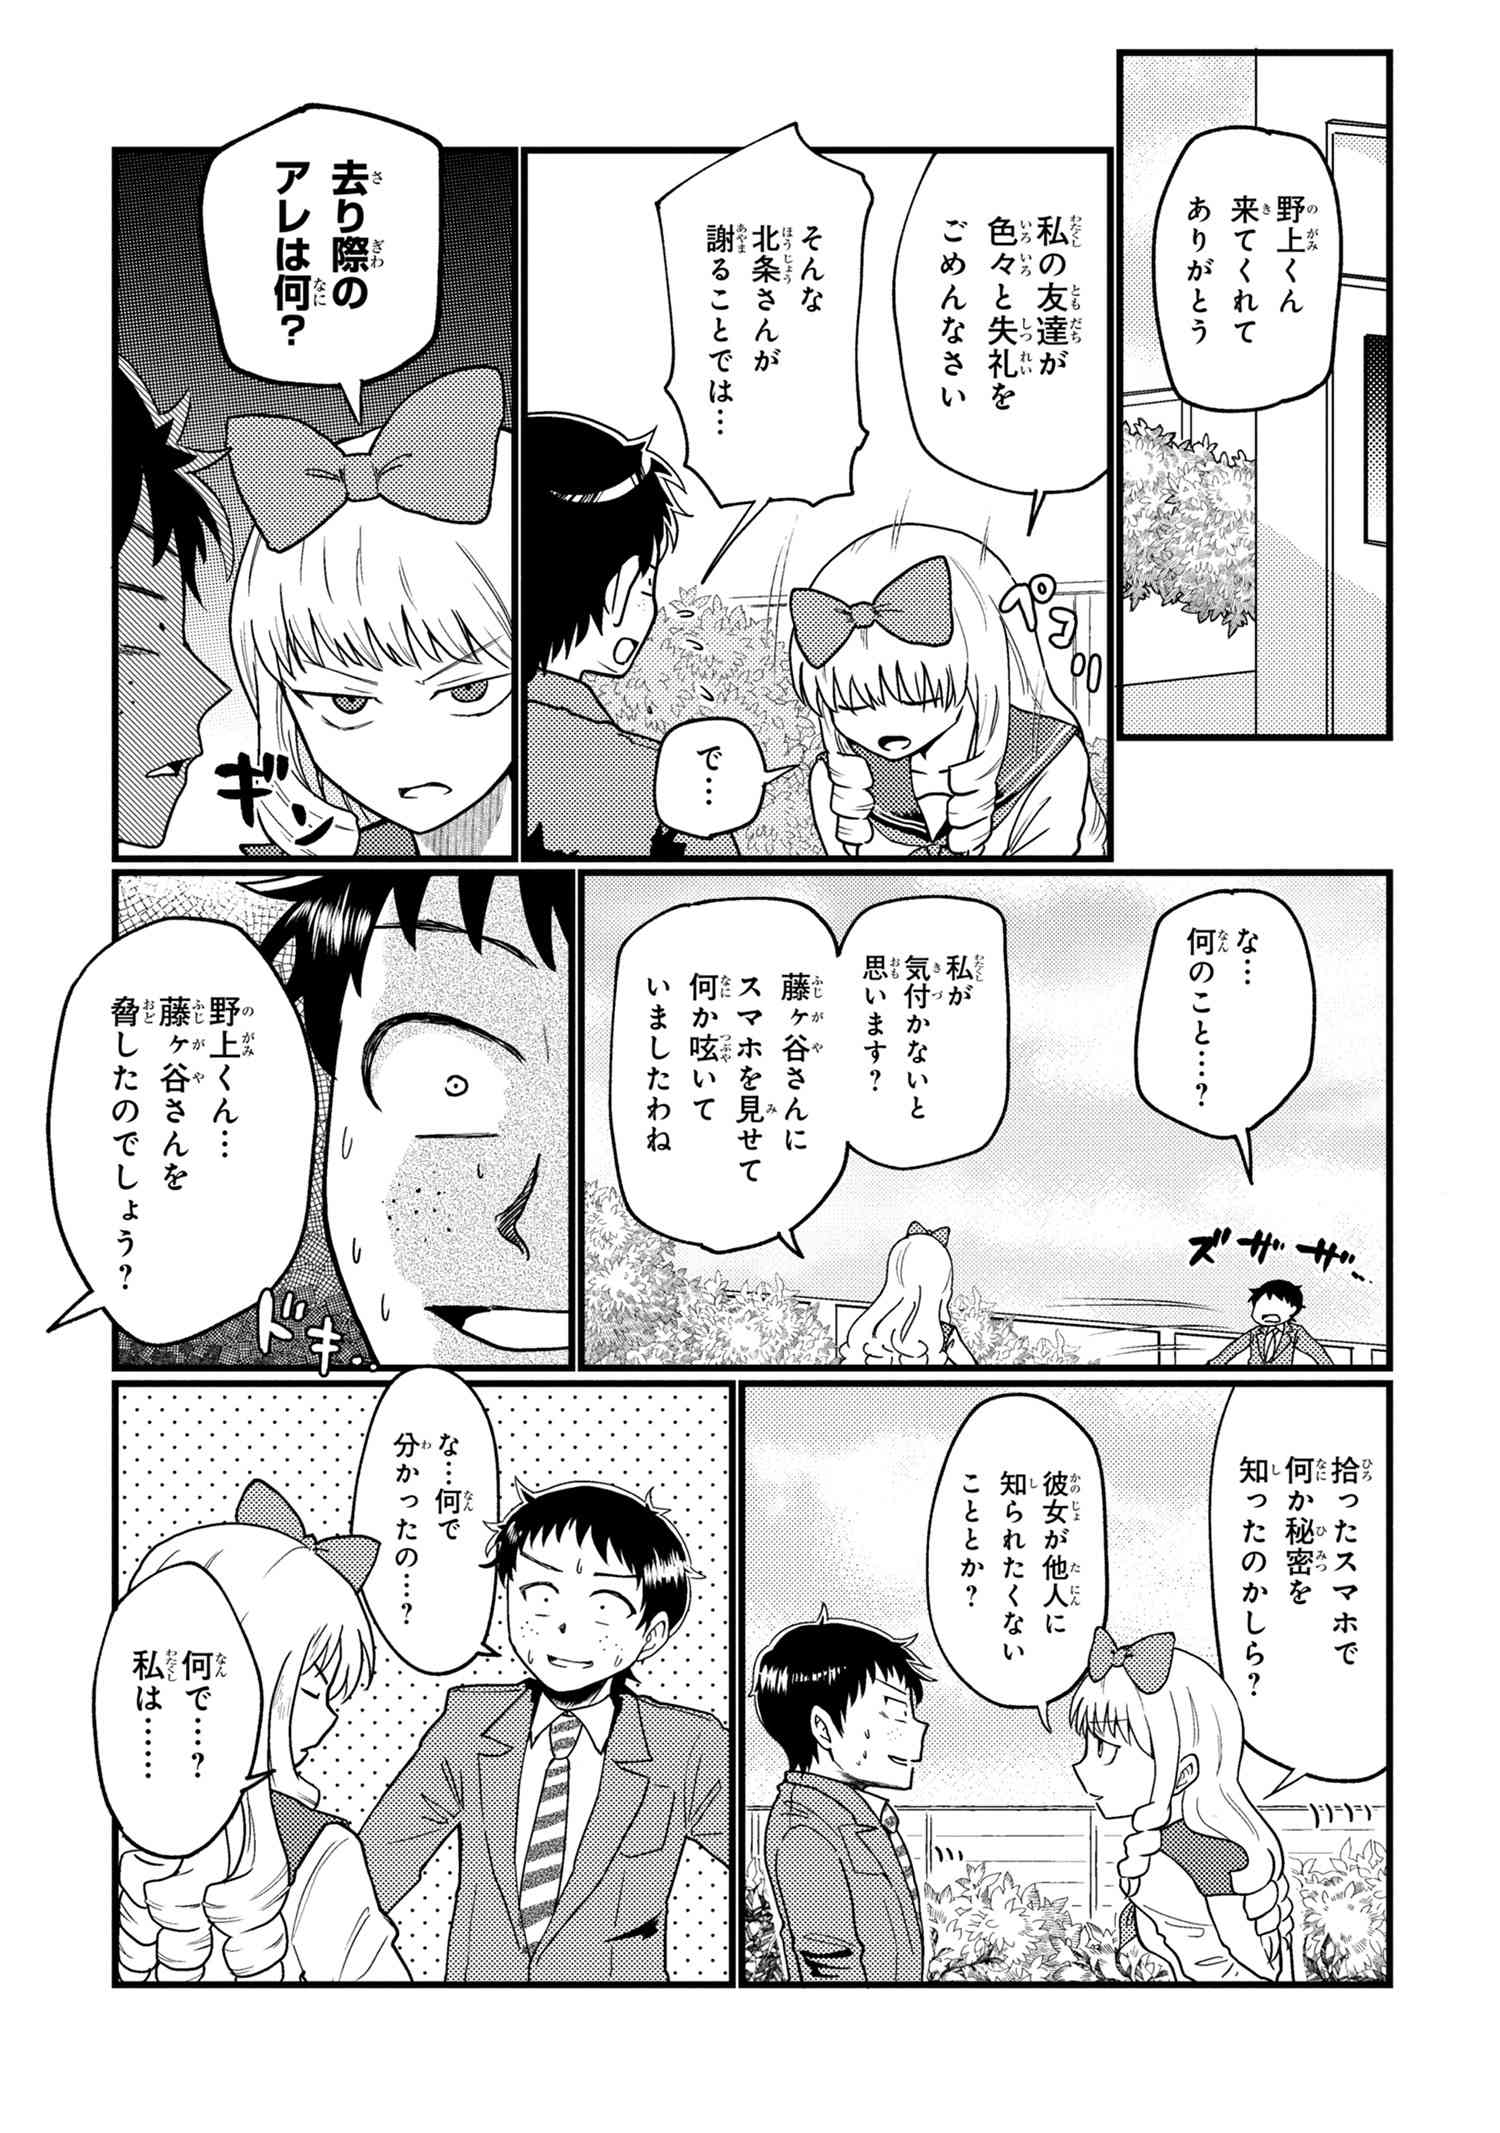 Houjou Urara no renai shousetsu o kaki nasai! - Chapter 12 - Page 3